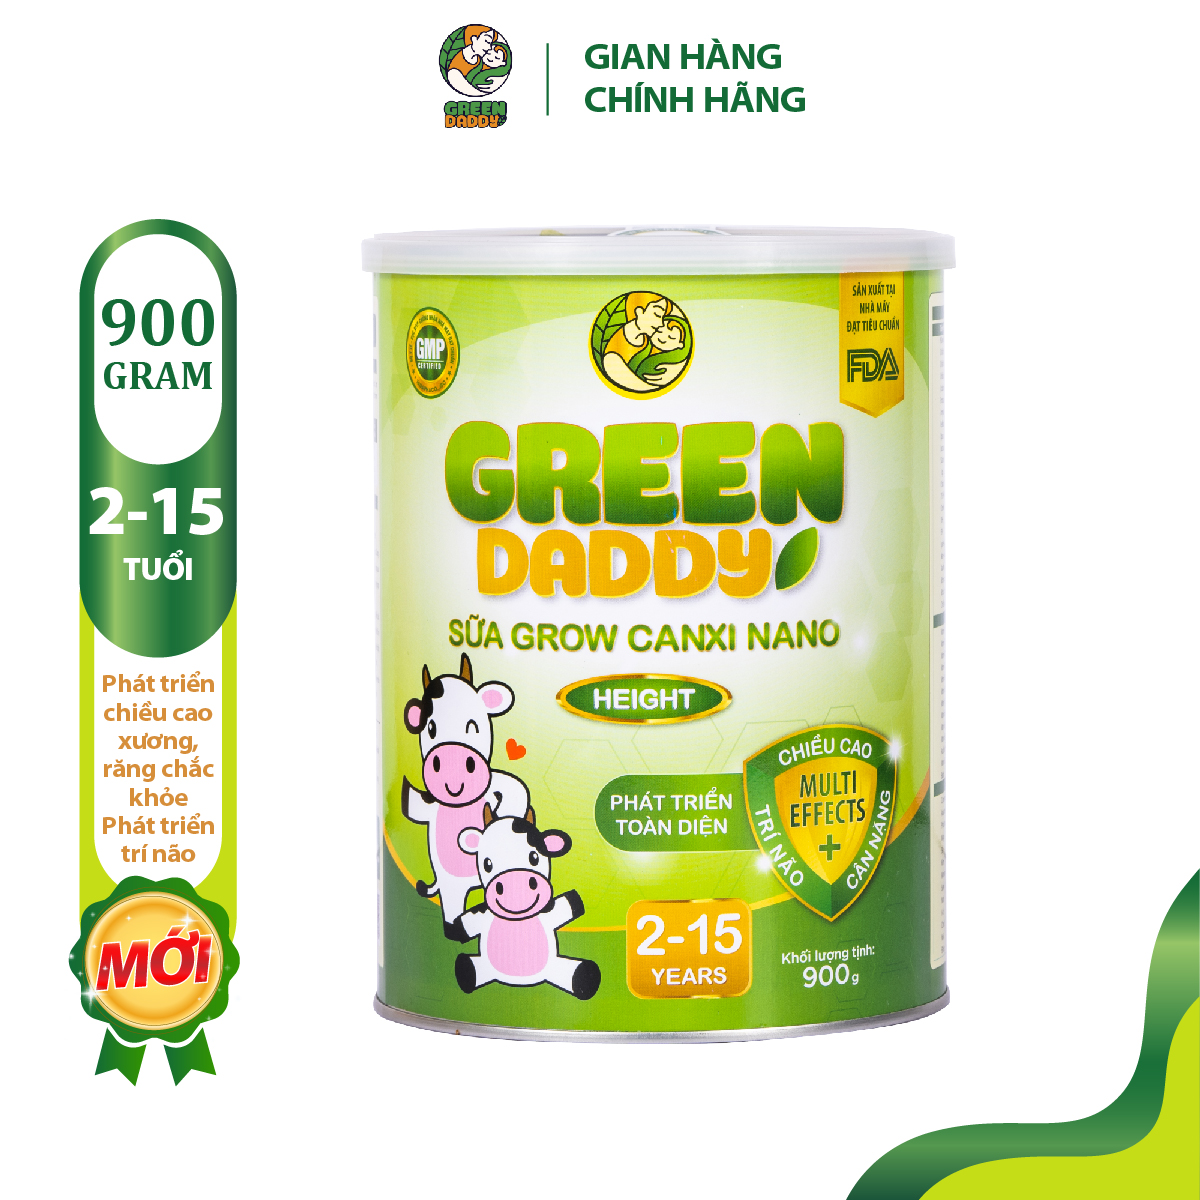 Sữa bột tăng chiều cao Green Daddy Grow canxi nano lon 900g, hỗ trợ phát triển toàn diện, trí não và cân nặng, dành cho bé từ 2 - 15 tuổi